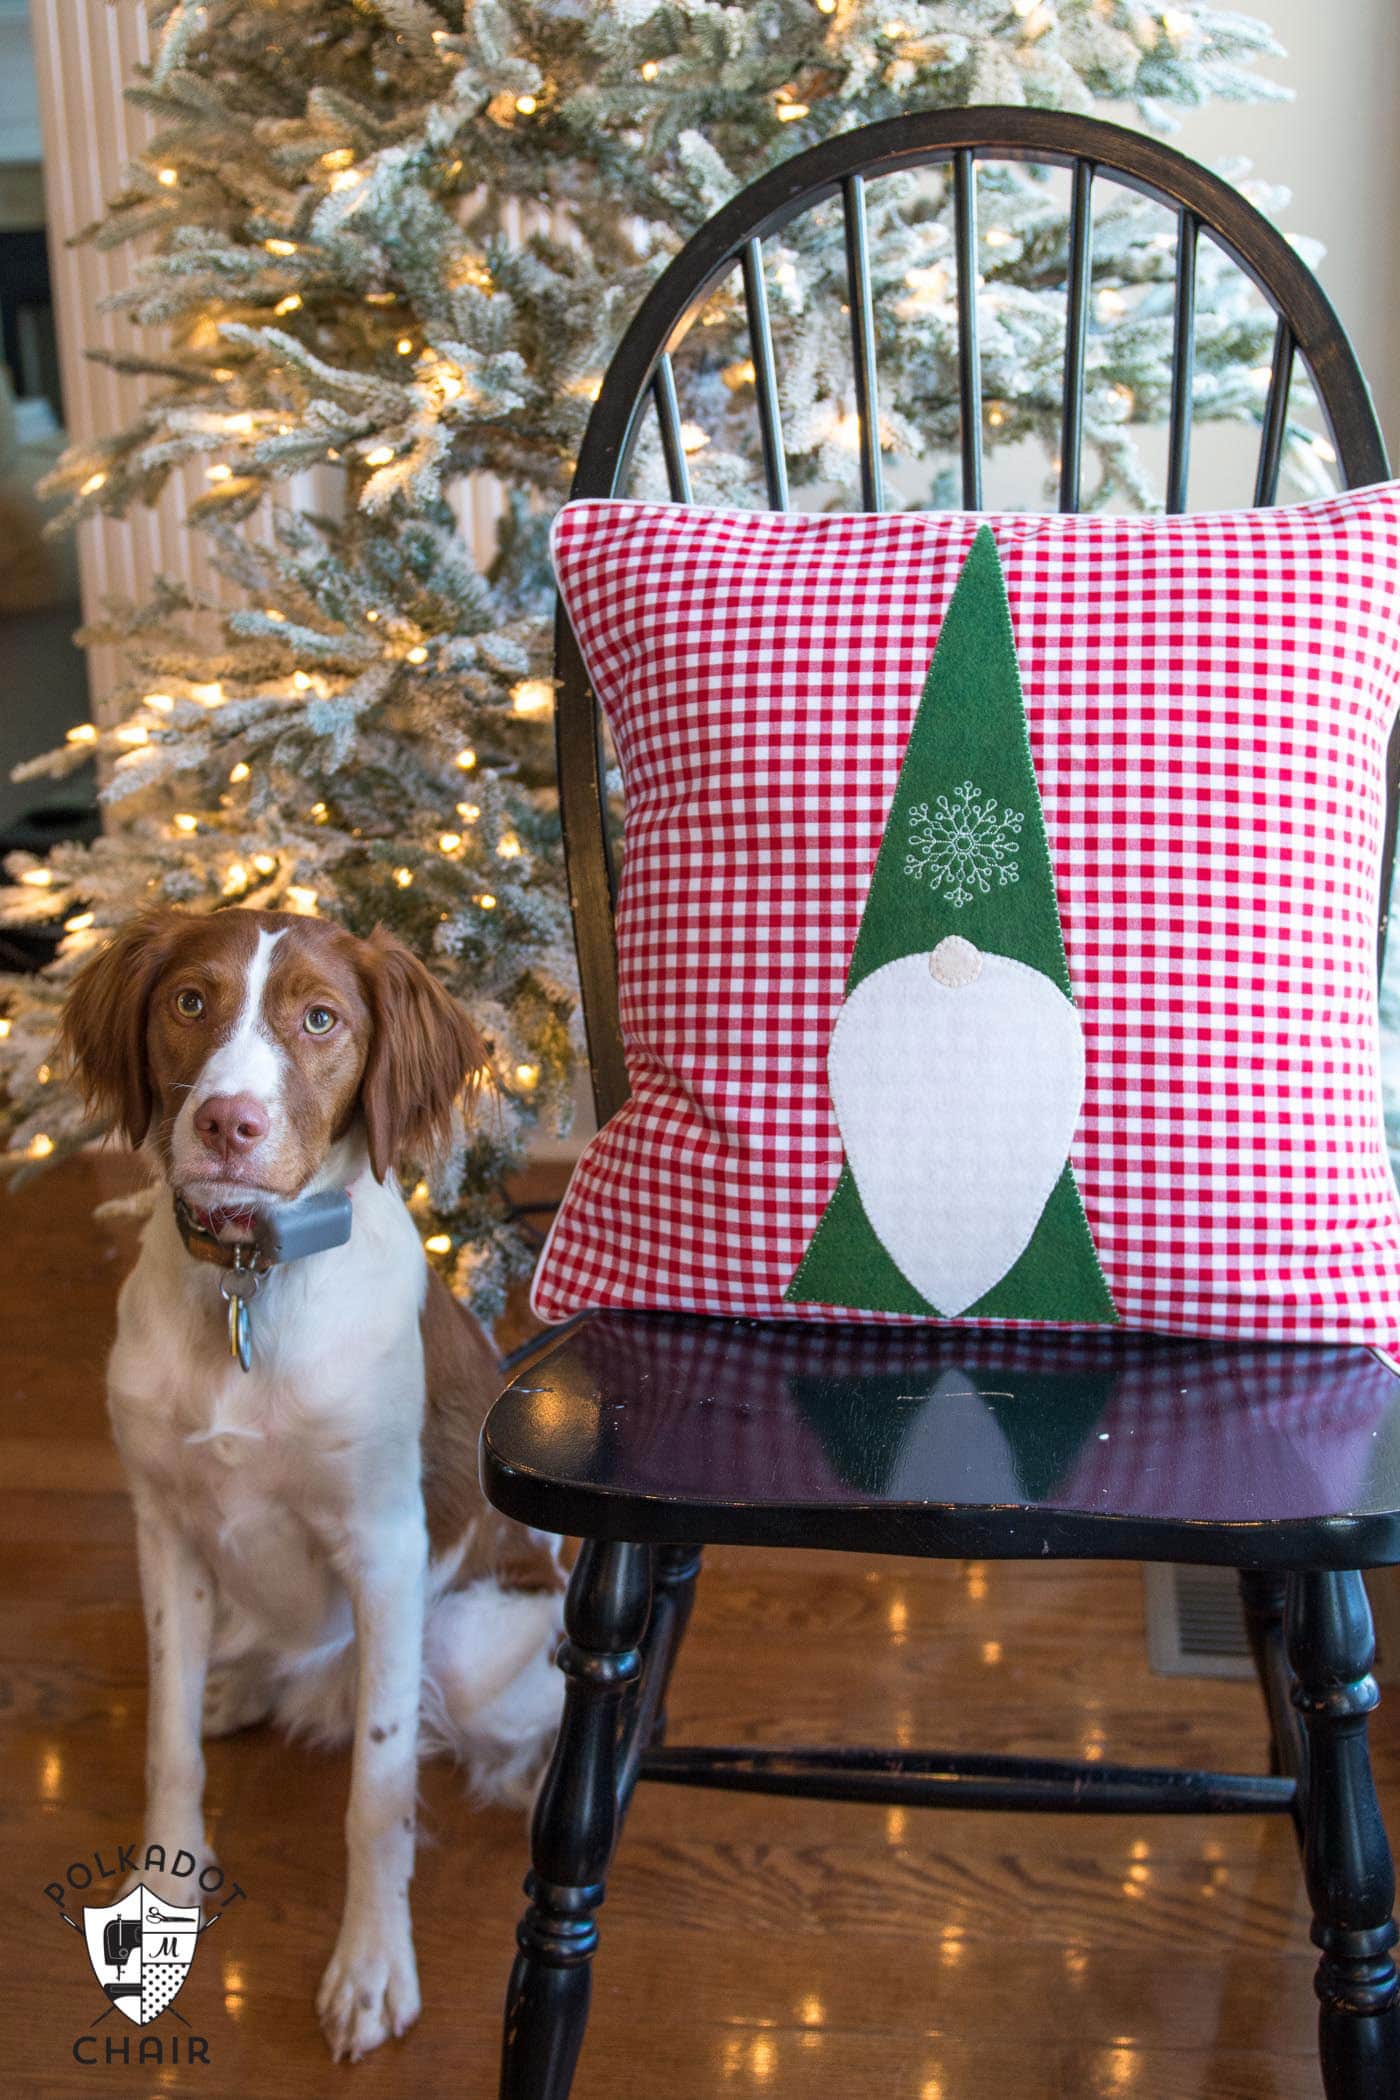 Patron de couture gratuit pour un oreiller Tomten Christmas Gnome - fait une jolie décoration de Noël DIY !!